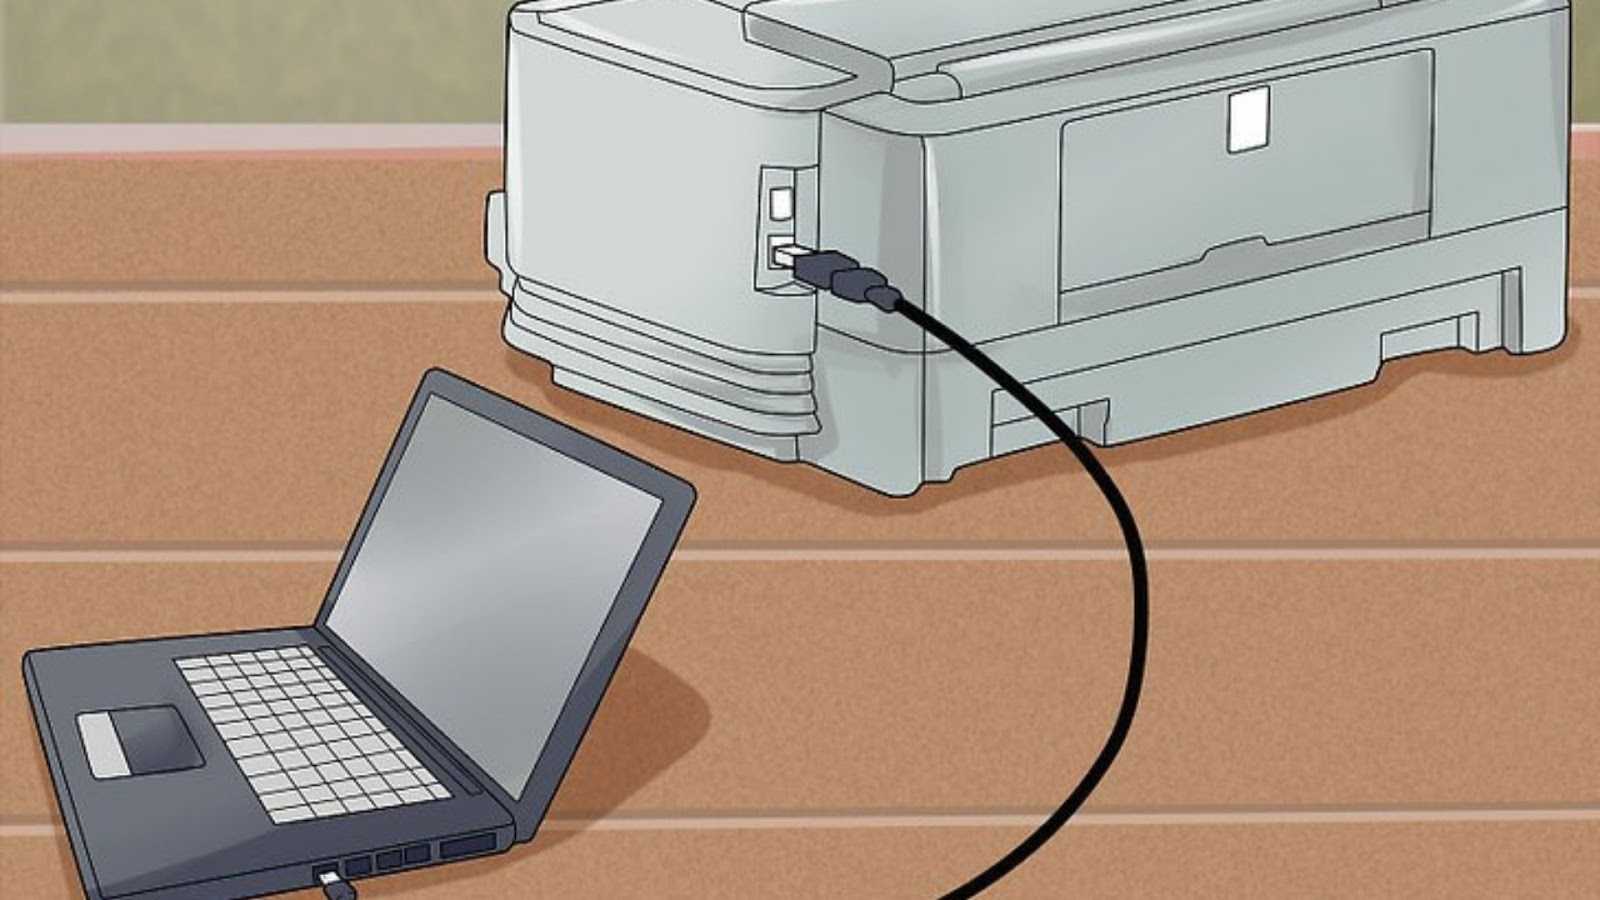 Как подключить принтер к ноутбуку